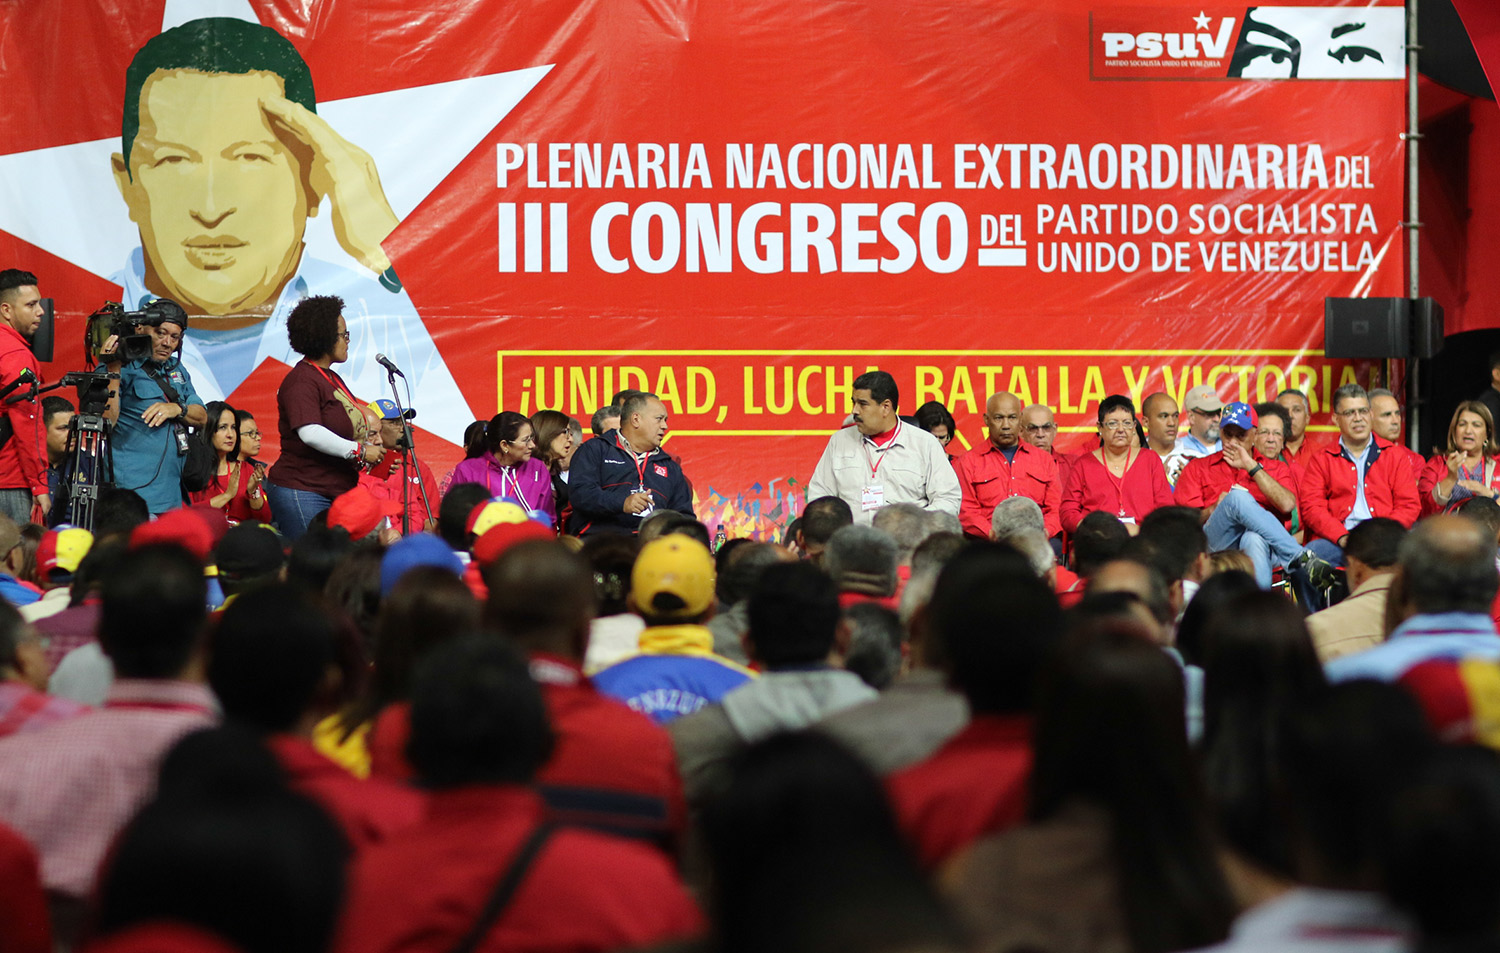 La derrota obliga al chavismo a revisar su política económica